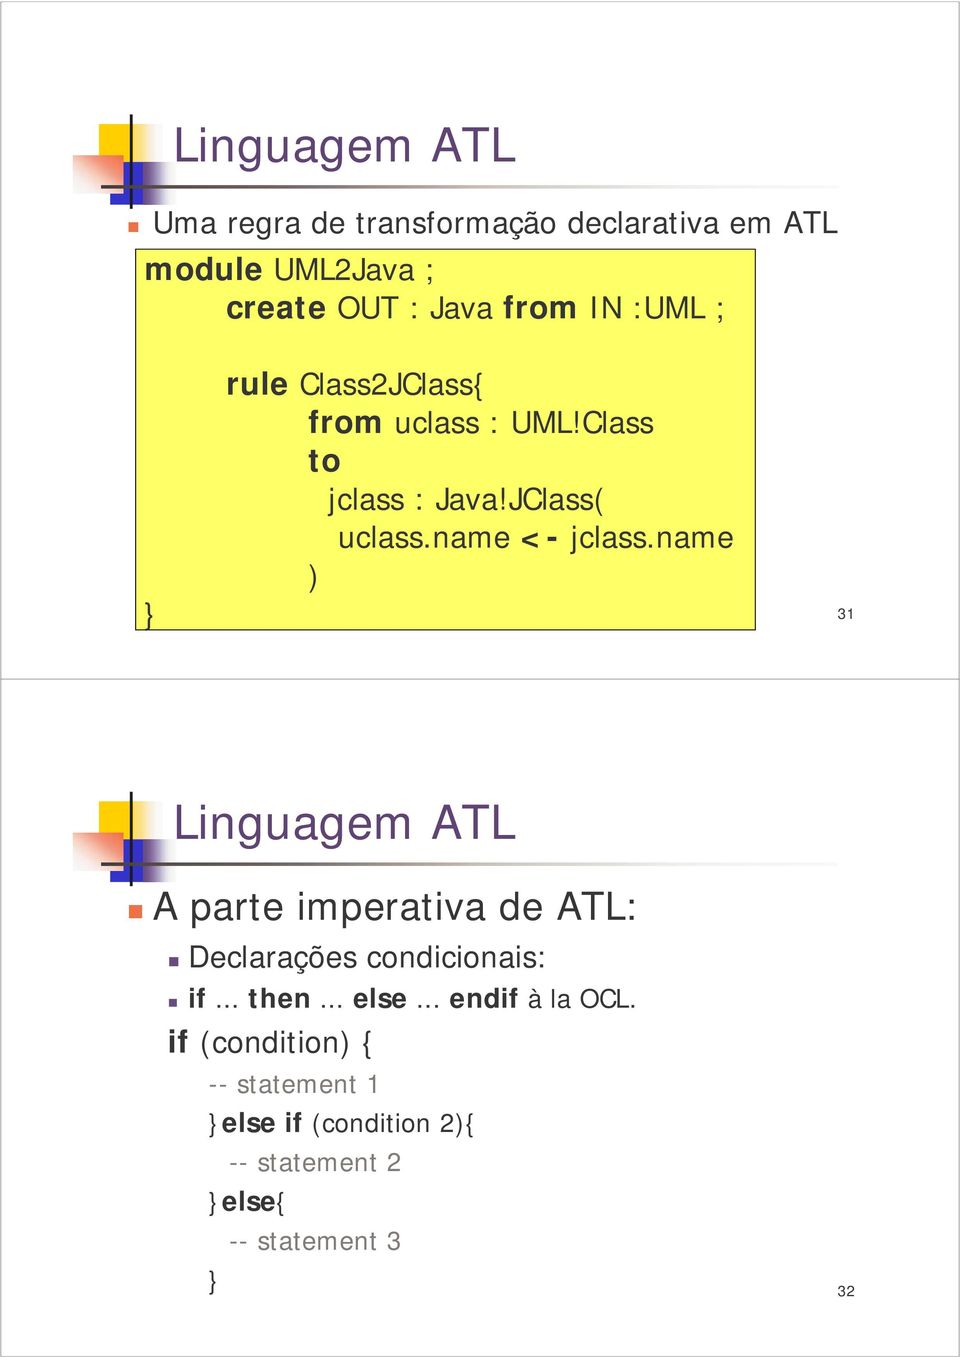 name ) 31 Linguagem ATL A parte imperativa de ATL: Declarações condicionais: if... then... else.